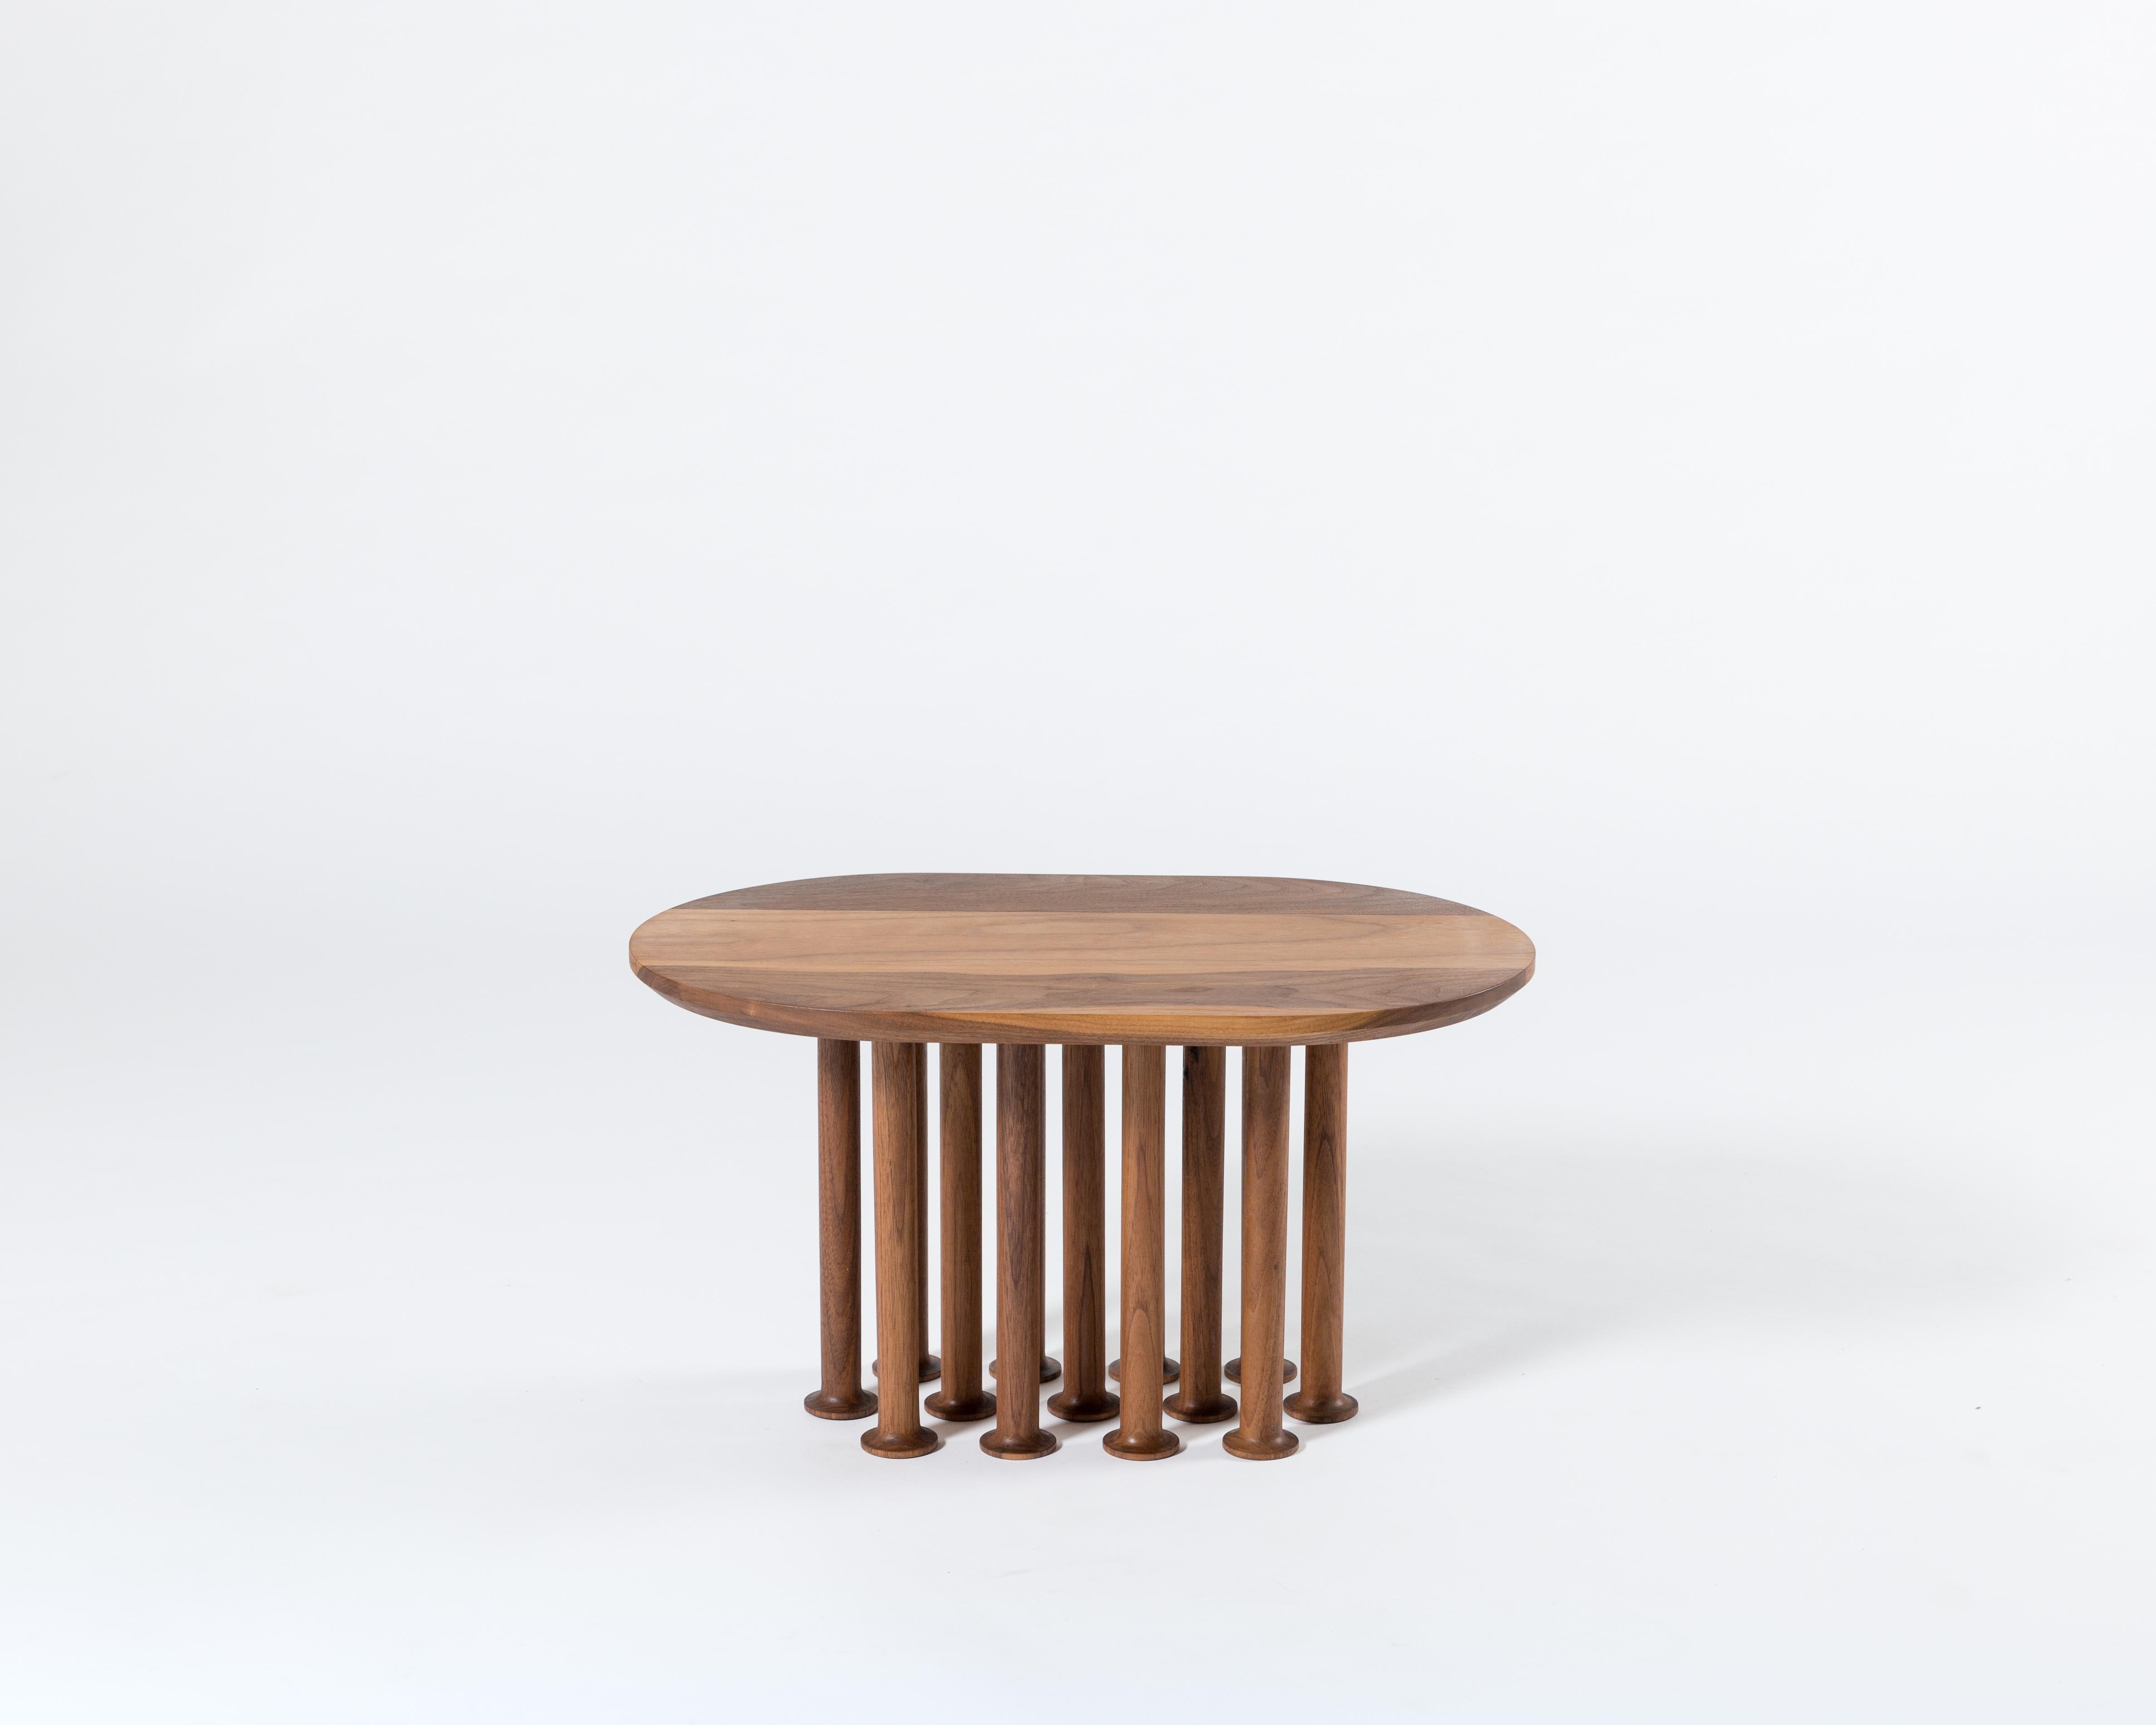 Molinillo est une collection de tables auxiliaires et centrales conçue par la Colección Estudio. Chacun des pieds des tables a été fabriqué manuellement et sa couleur noire intense a été obtenue en carbonisant le bois, une finition inspirée des